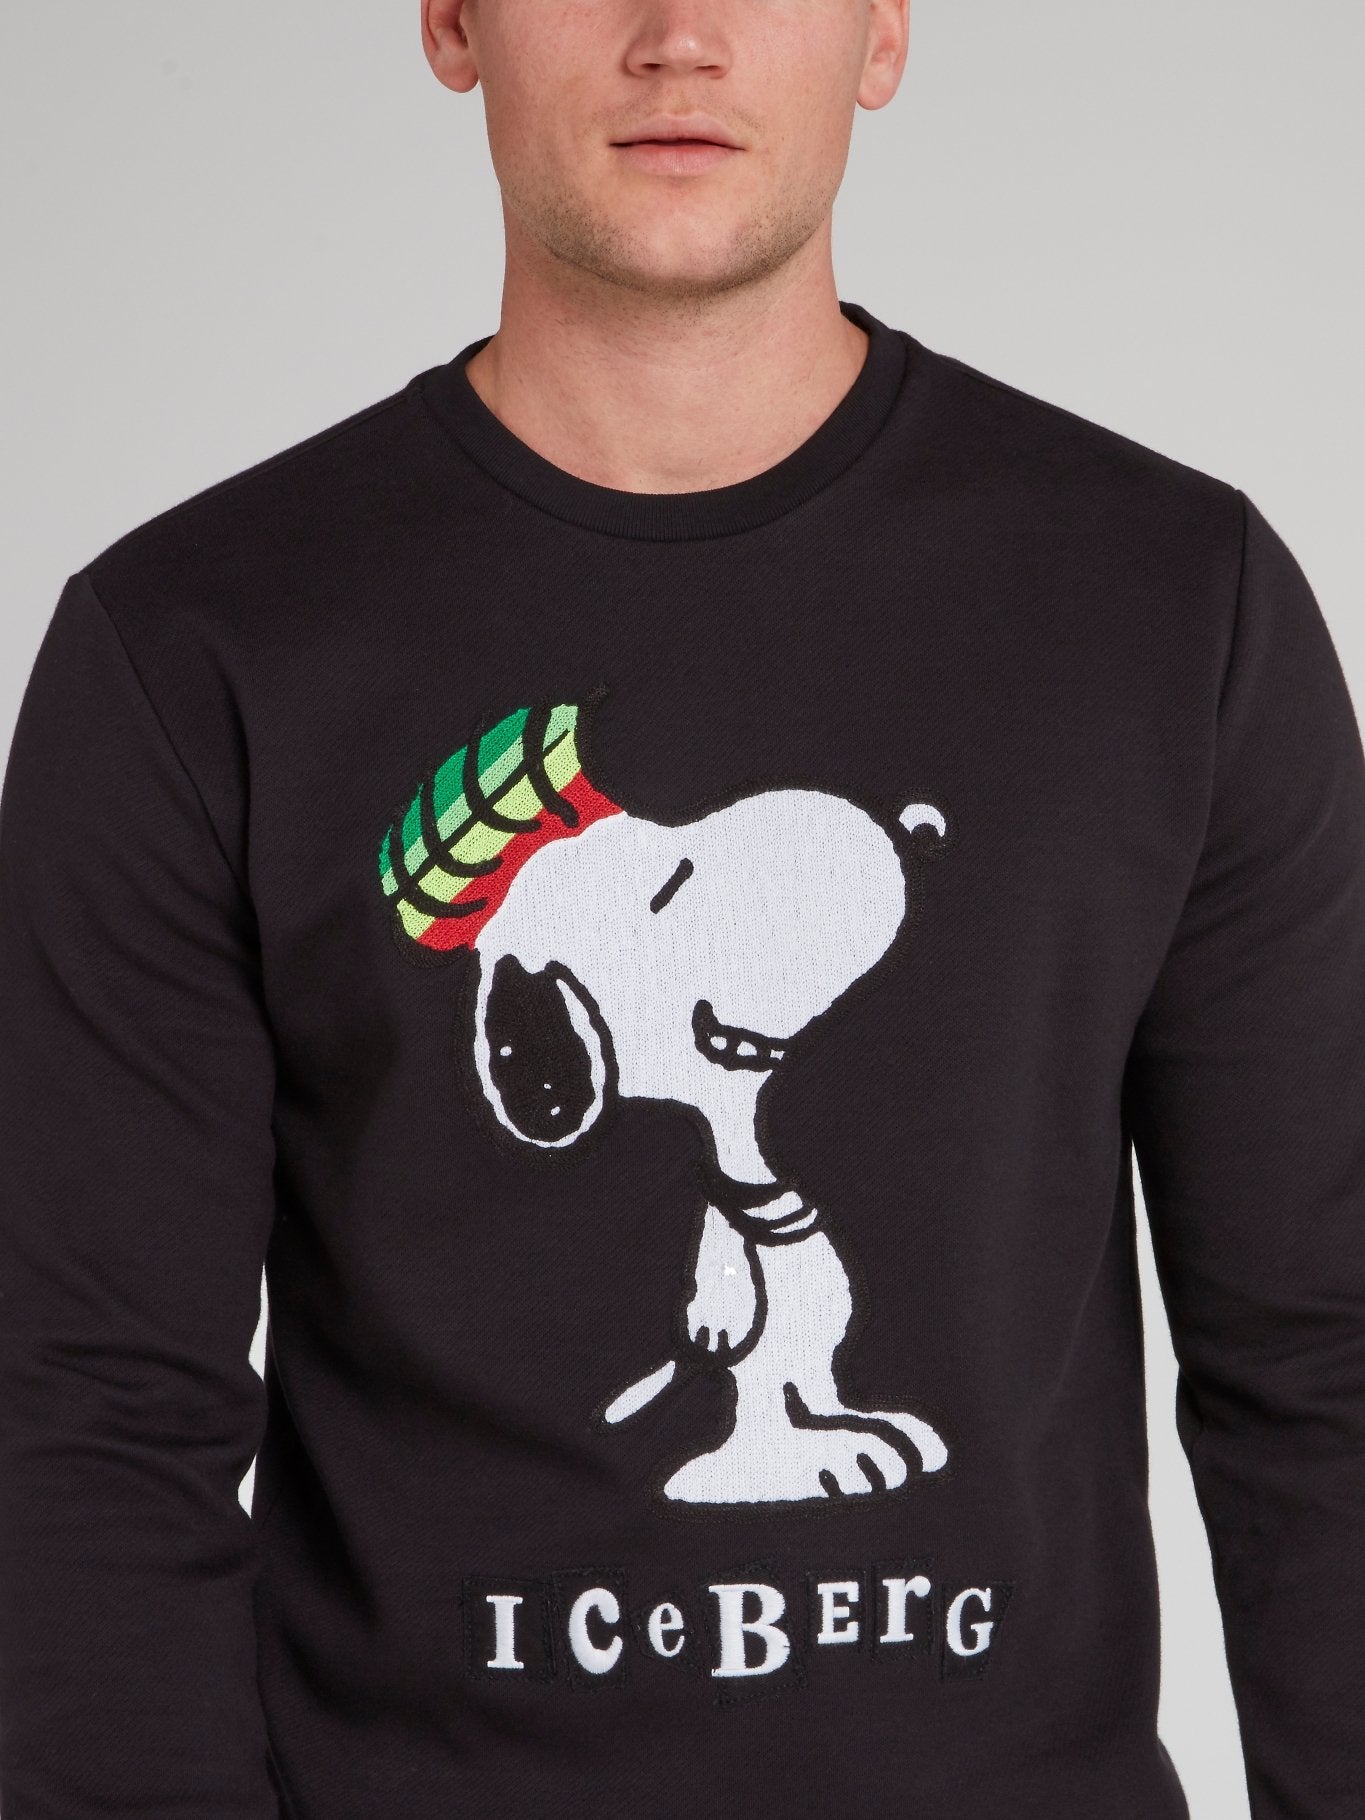 Snoopy Black Crewneck Sweatshirt